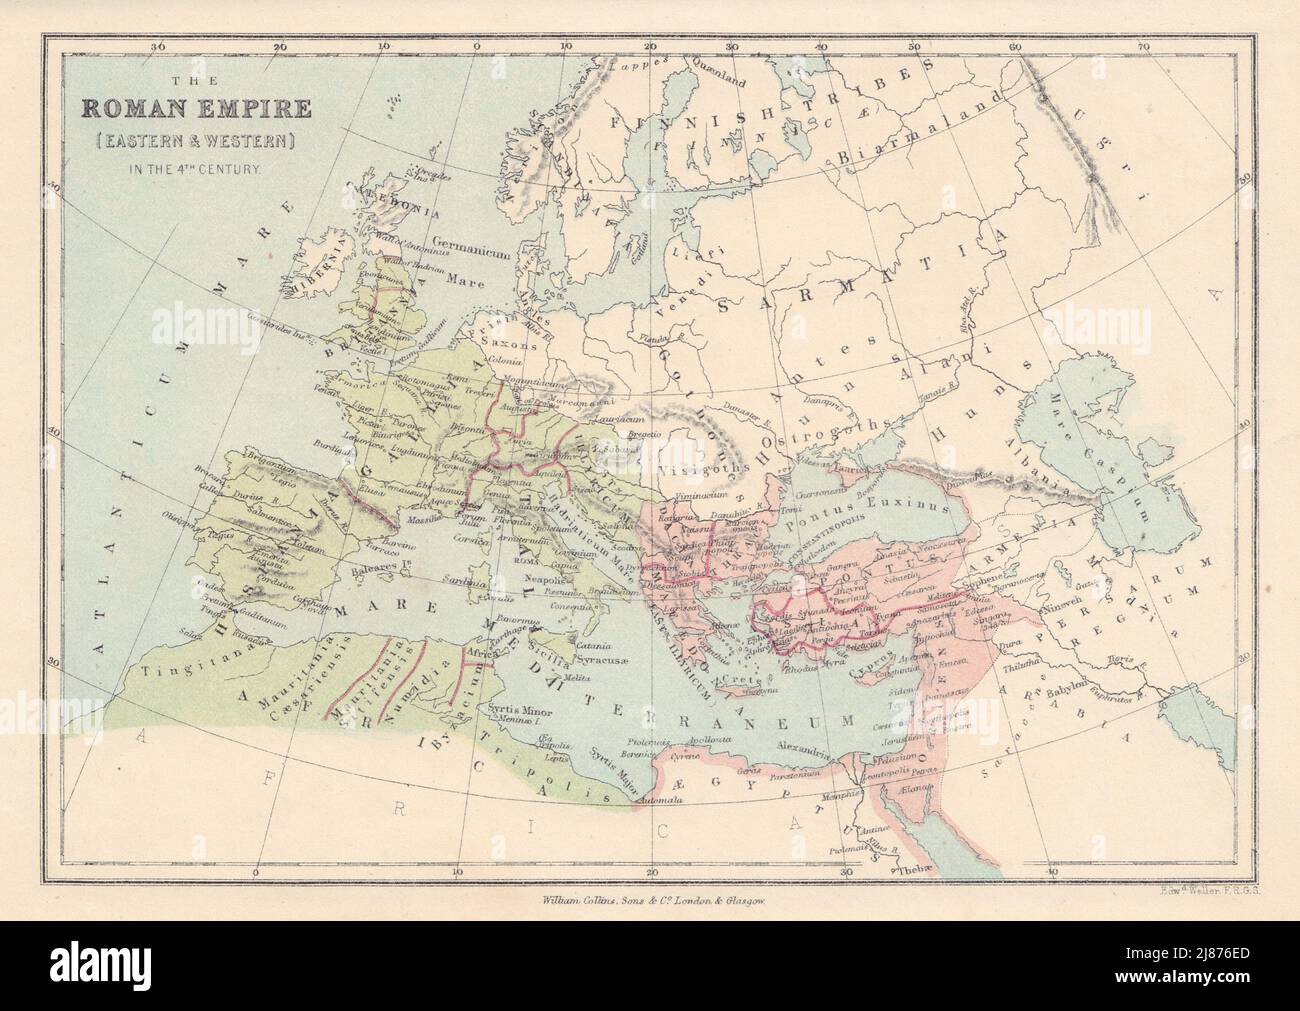 4th SECOLO EUROPA Impero Romano Oriente bizantino e occidentale. MAPPA COLLINS 1873 Foto Stock